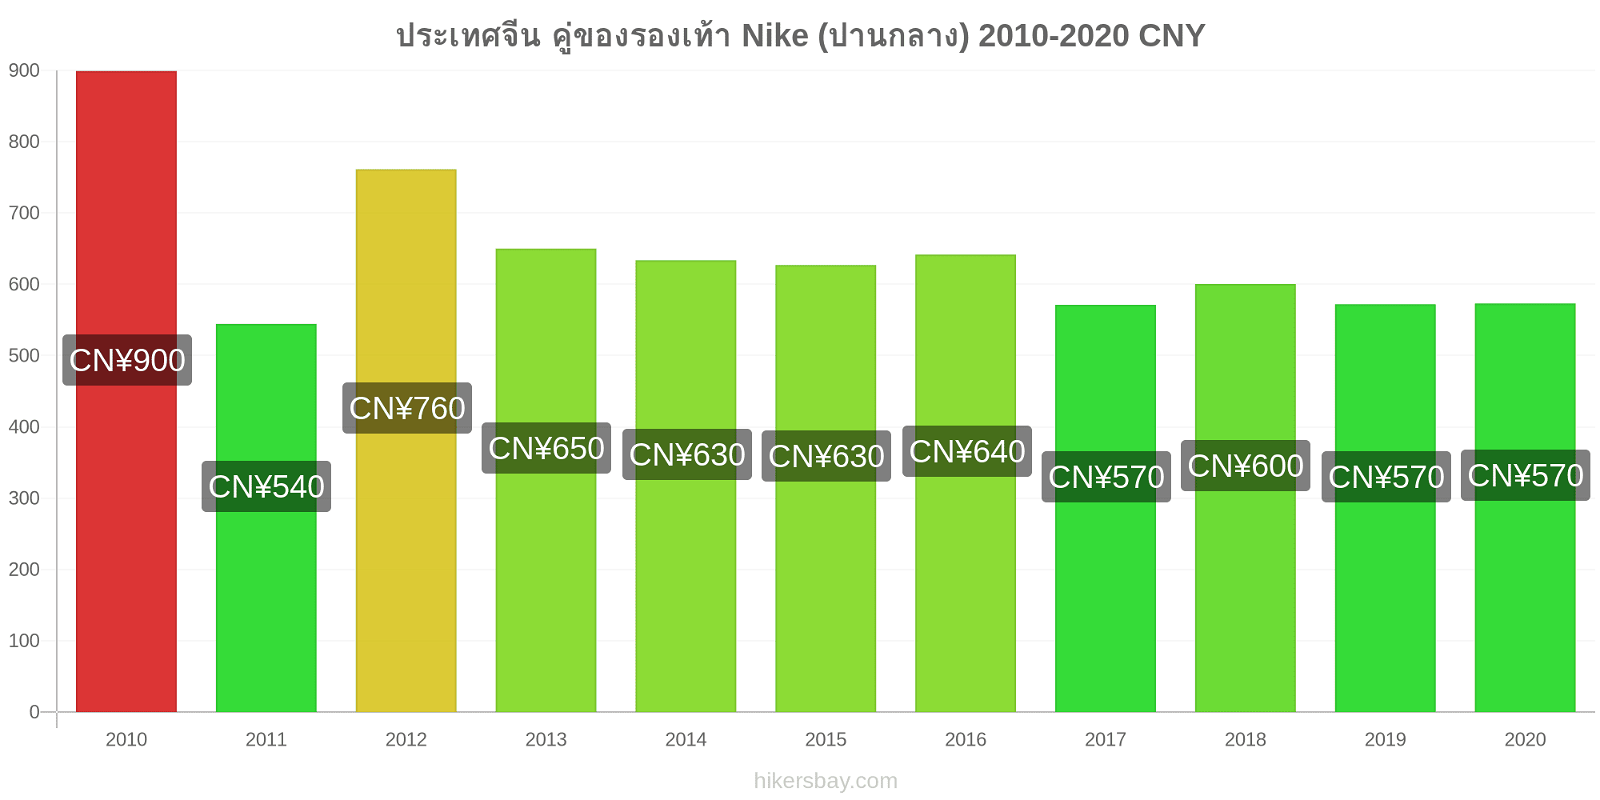 ประเทศจีน การเปลี่ยนแปลงราคา คู่ของรองเท้า Nike (ปานกลาง) hikersbay.com